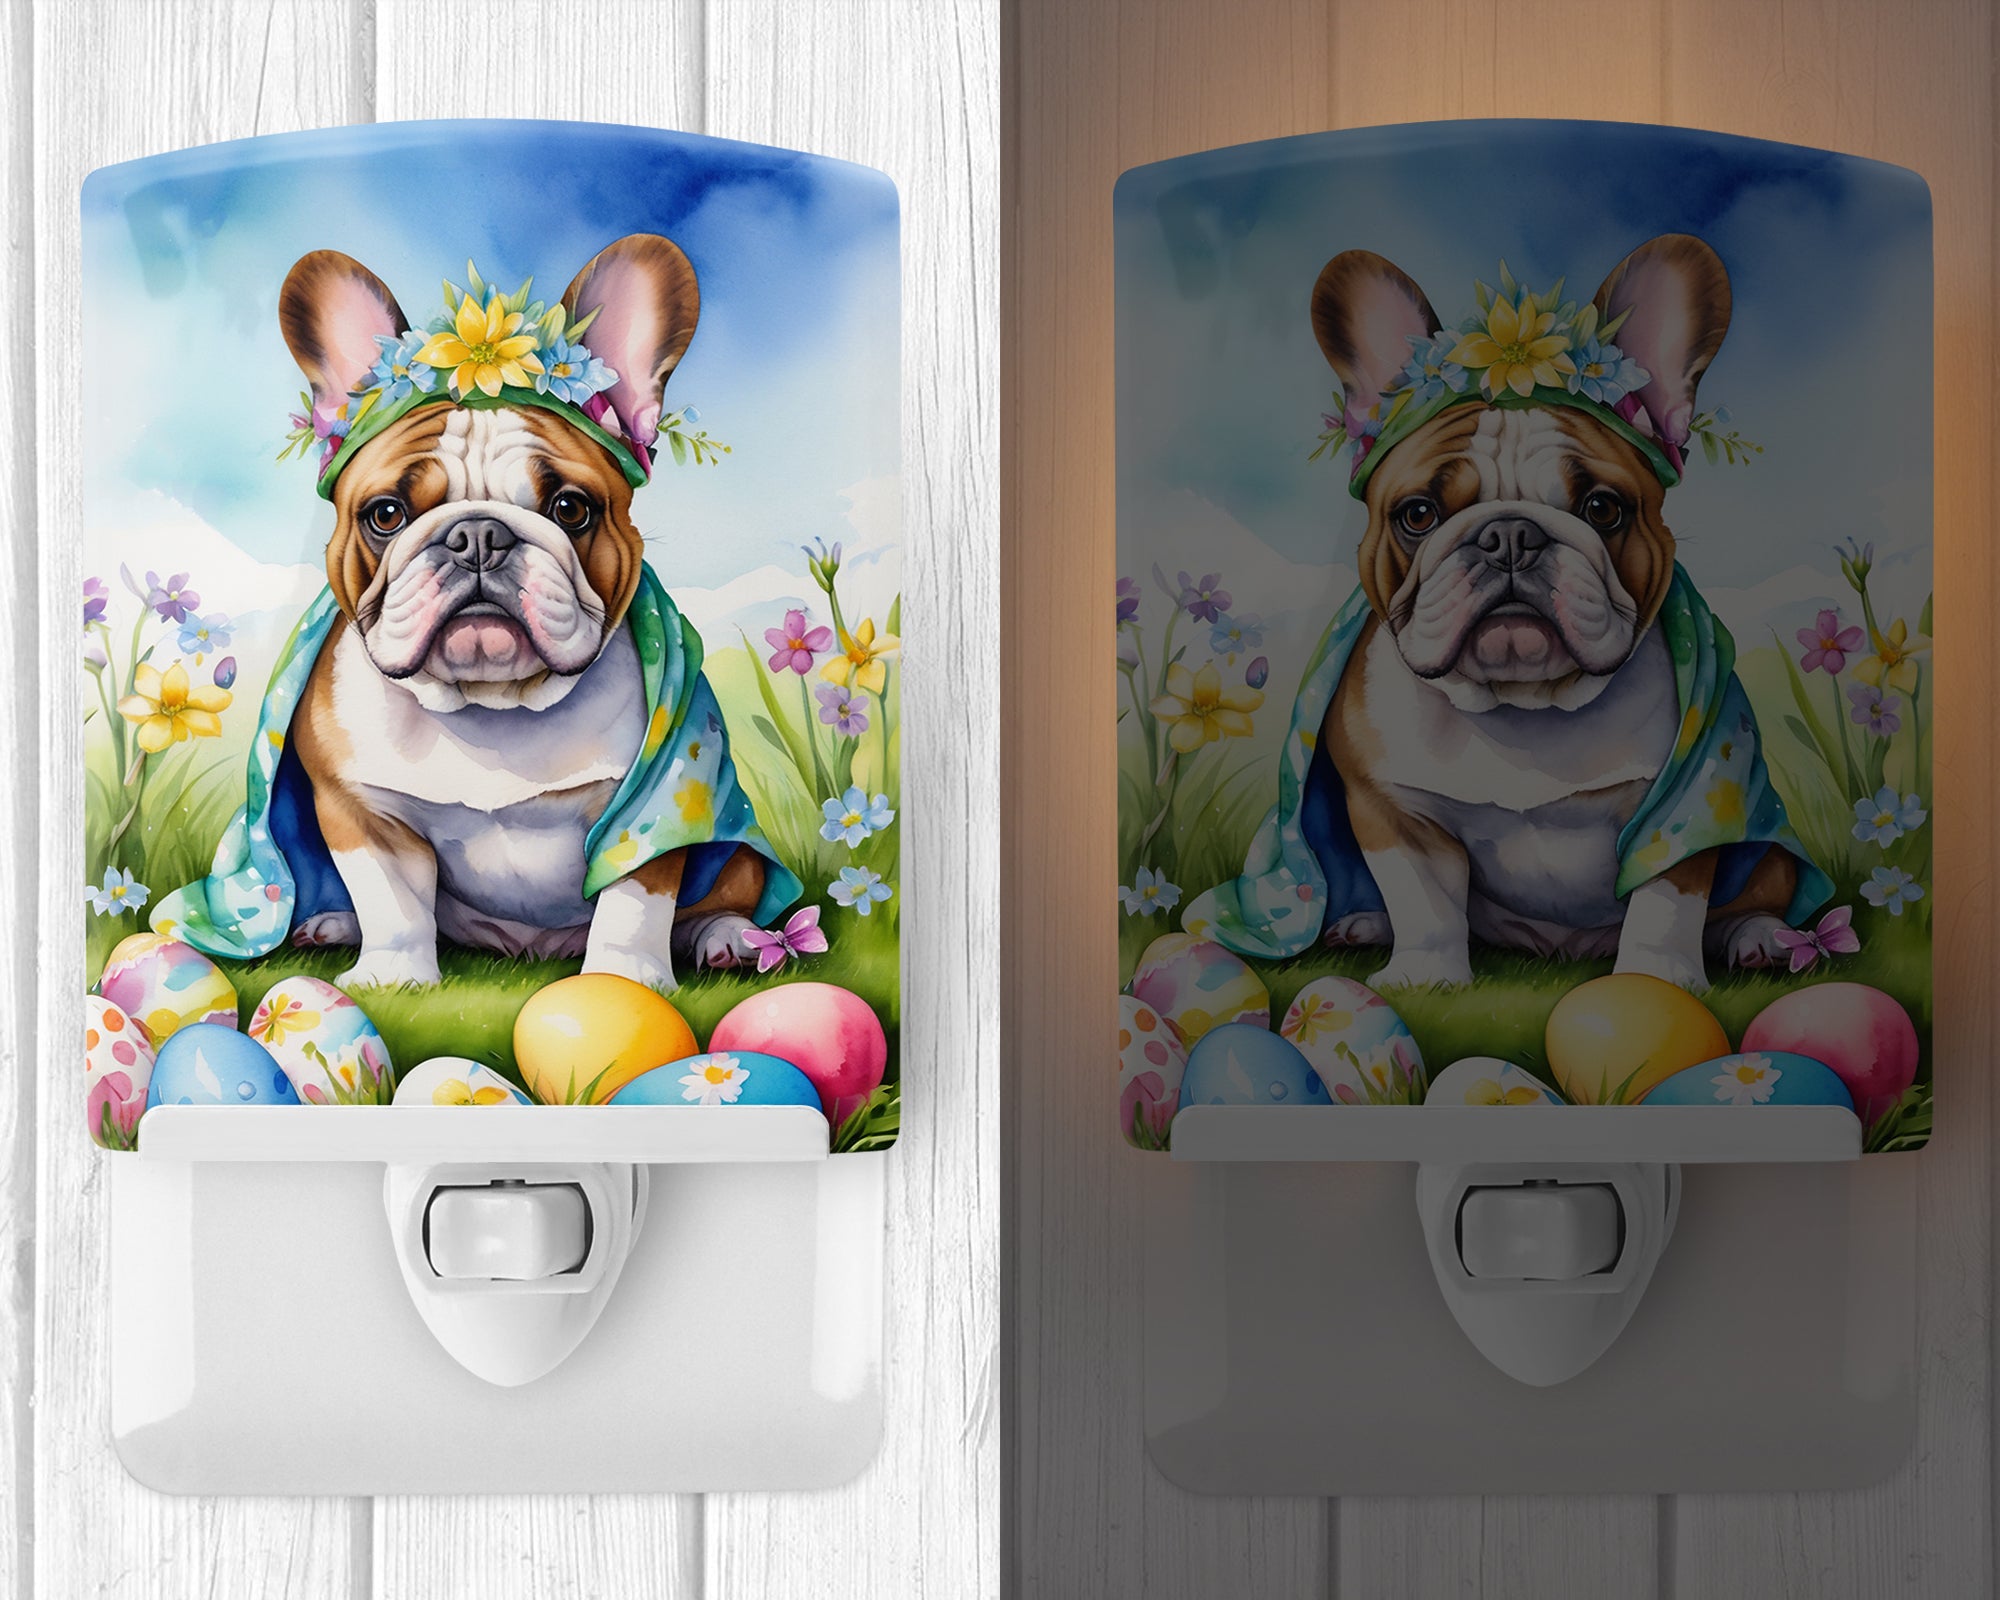 Buy this English Bulldog Easter Egg Hunt Ceramic Night Light